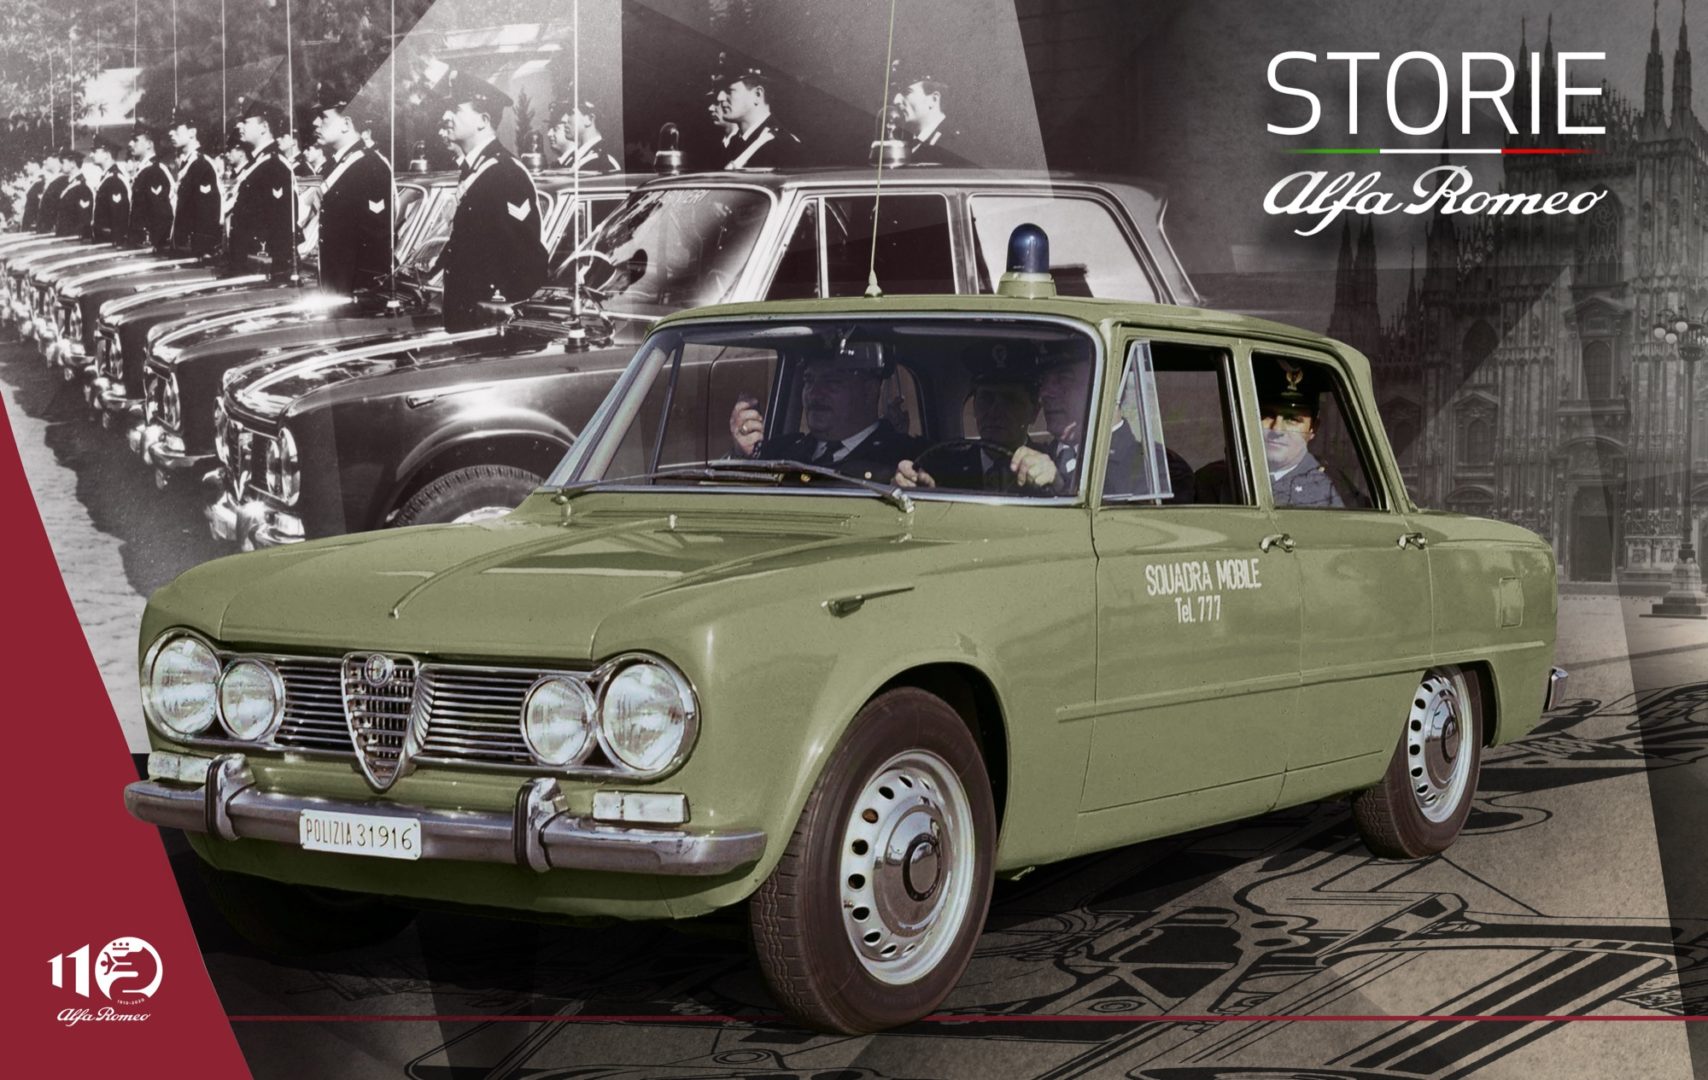 Storie Alfa Romeo Episodio 5